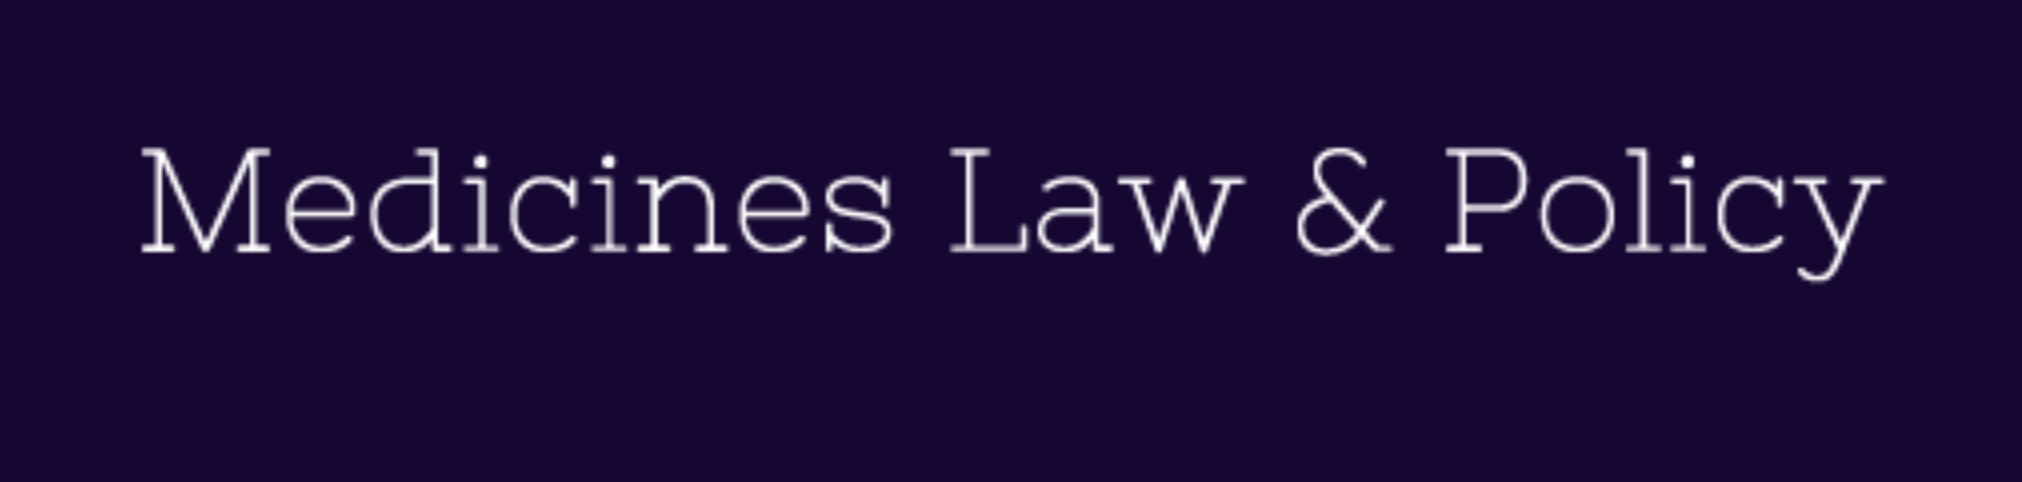 Medicines Law & Policy logo